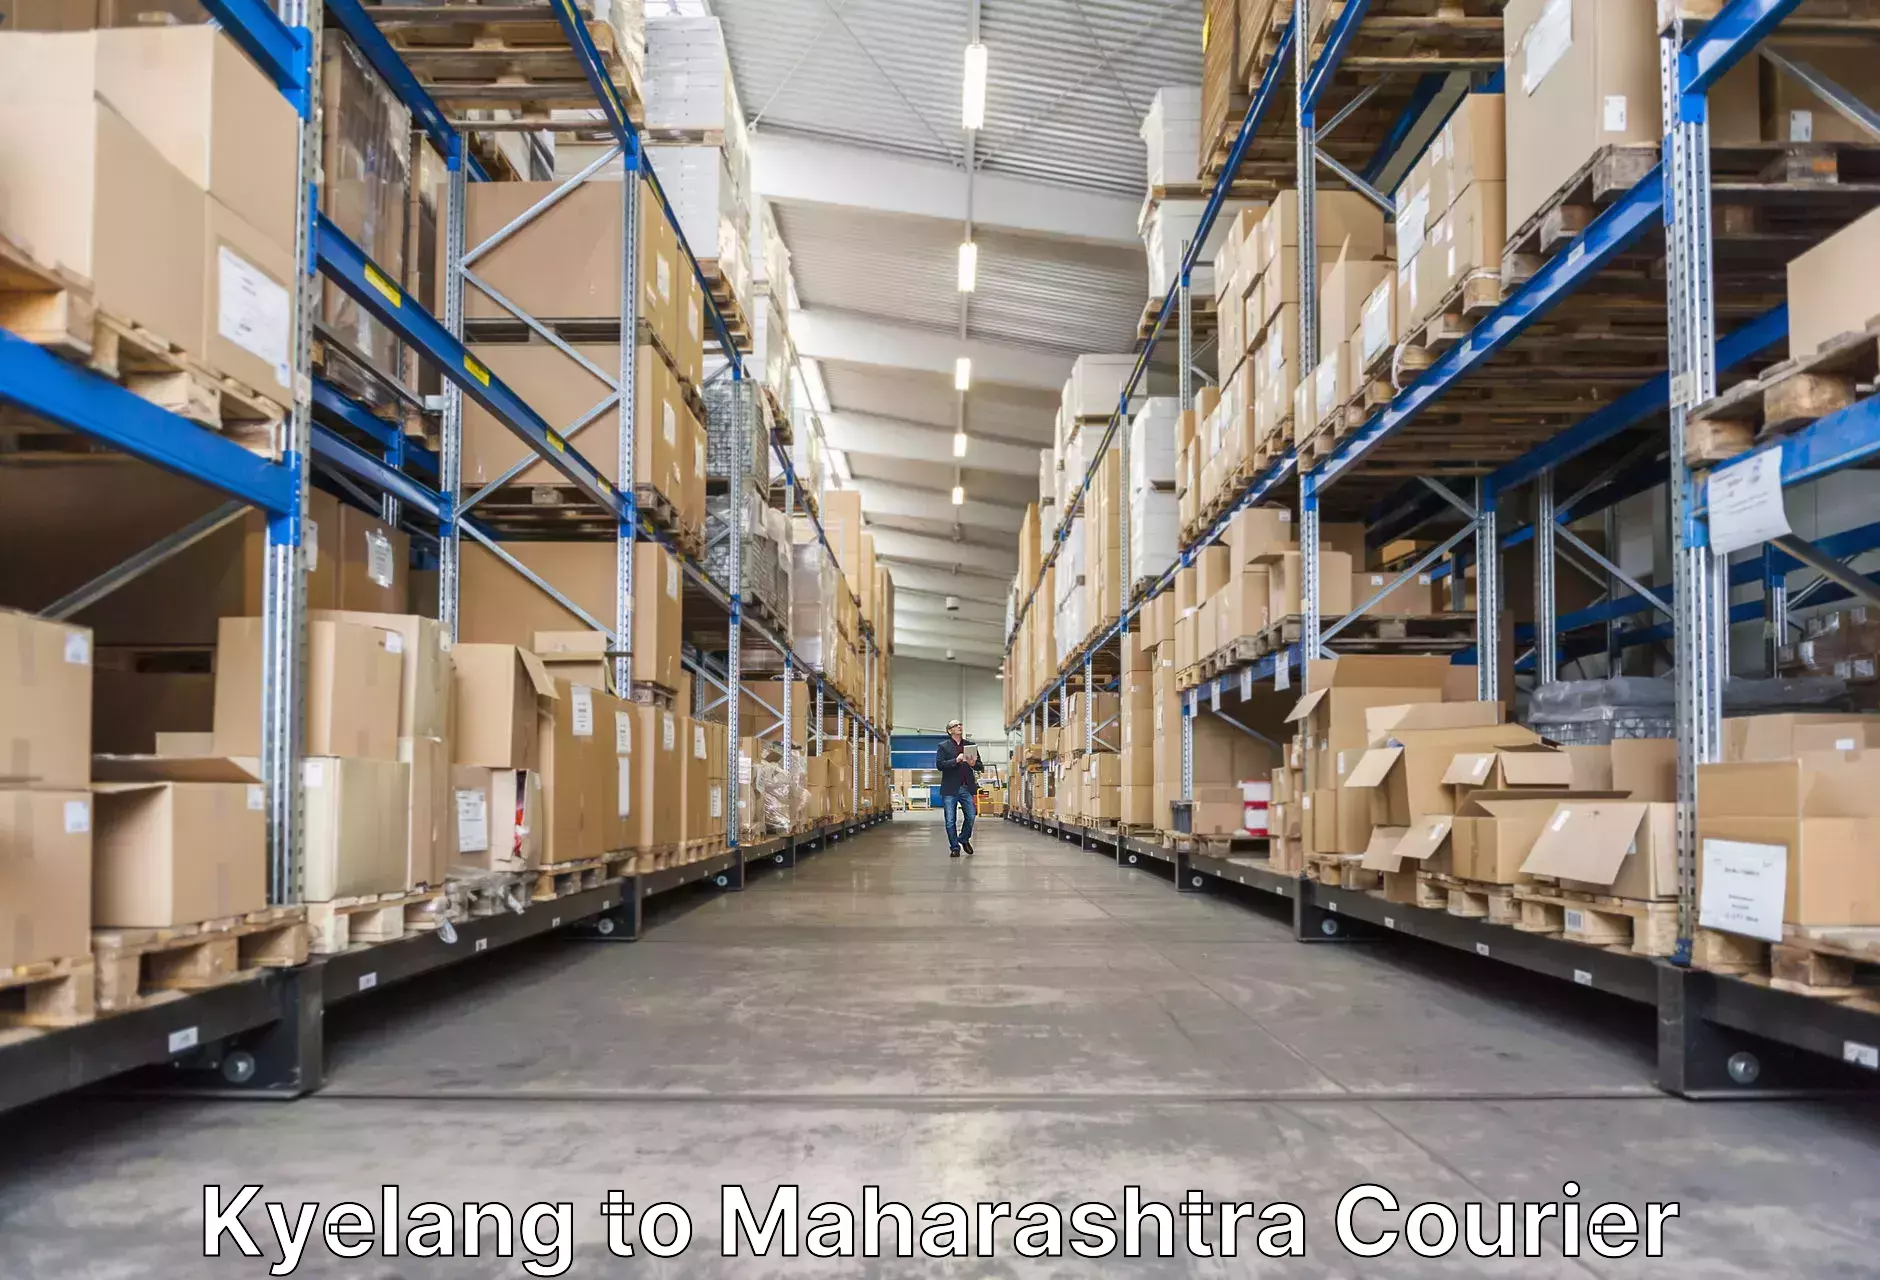 Baggage shipping service Kyelang to Maharashtra